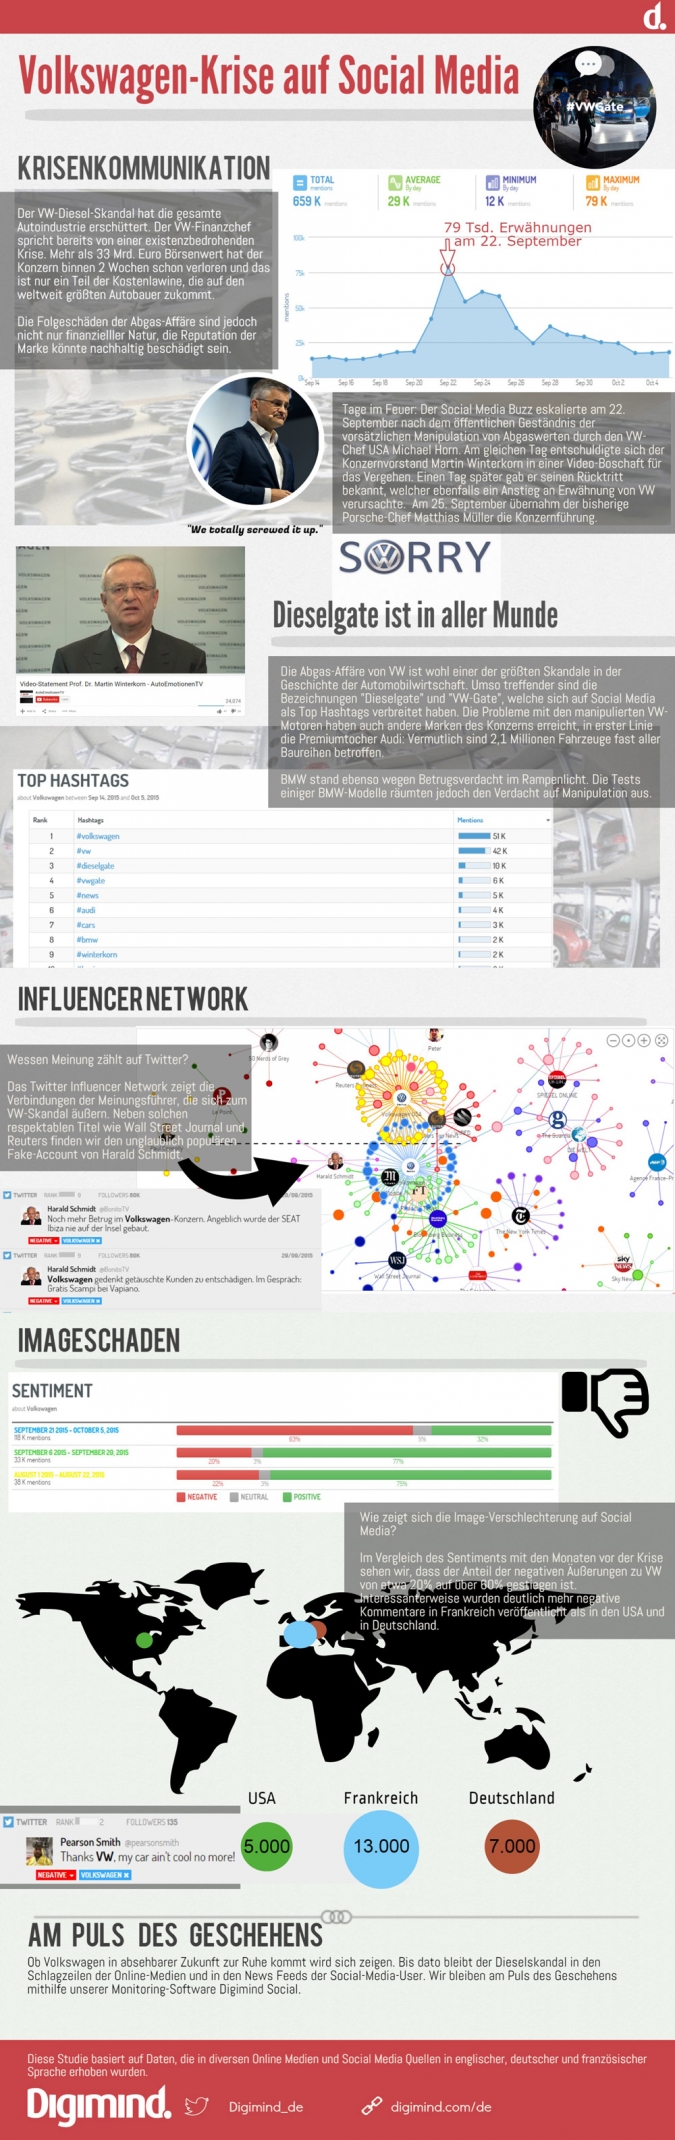 Krisenmanagement mit Social Media Monitoring bei Shitstorms – Lernt aus VWs #dieselgate! [Infografik]